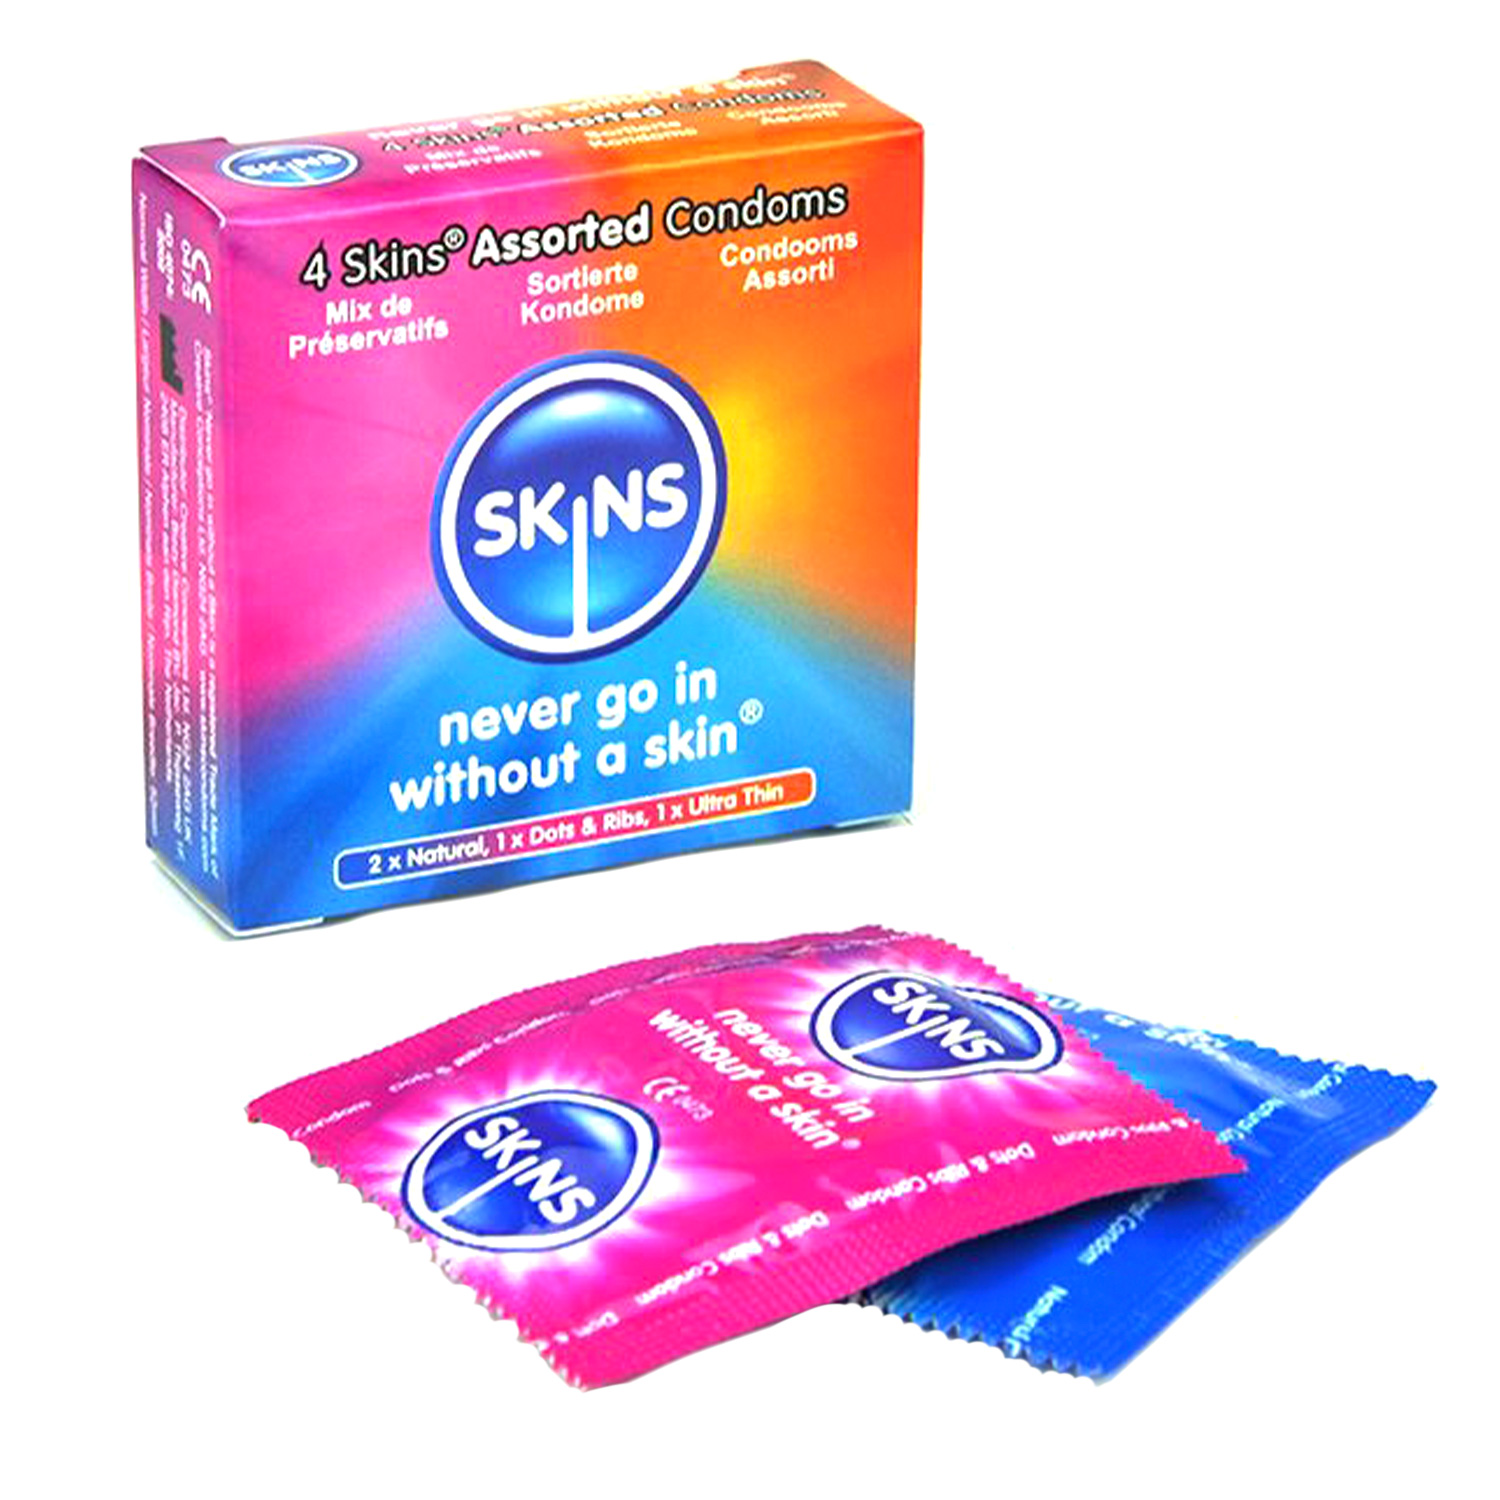 Skins Olika Kondomer 4 st - Skins